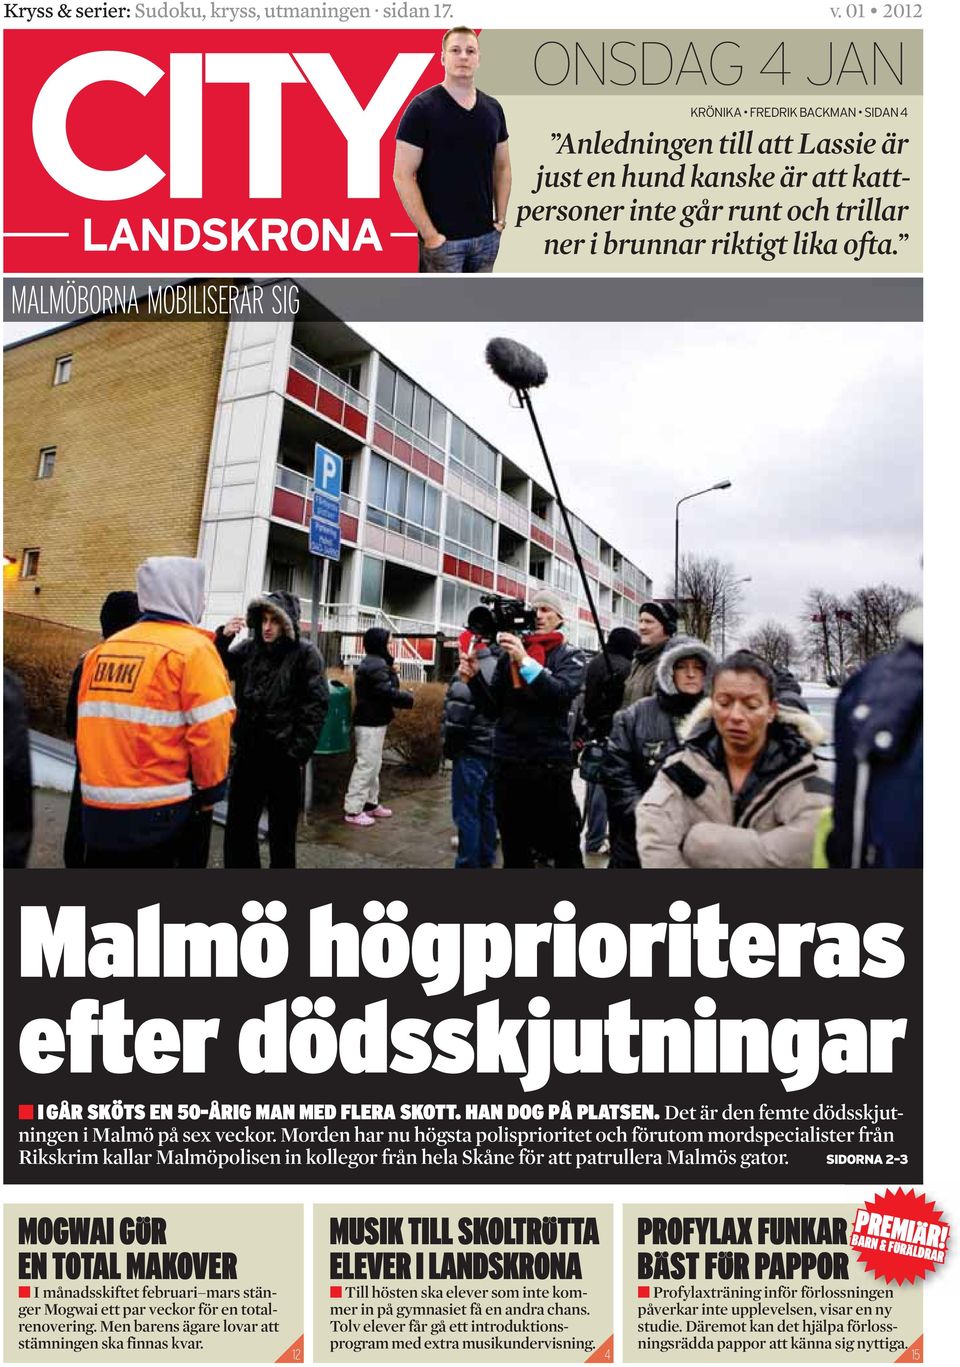 Morden har nu högsta polisprioritet och förutom mordspecialister från Riks krim kallar Malmöpolisen in kollegor från hela Skåne för att patrullera Malmös gator.